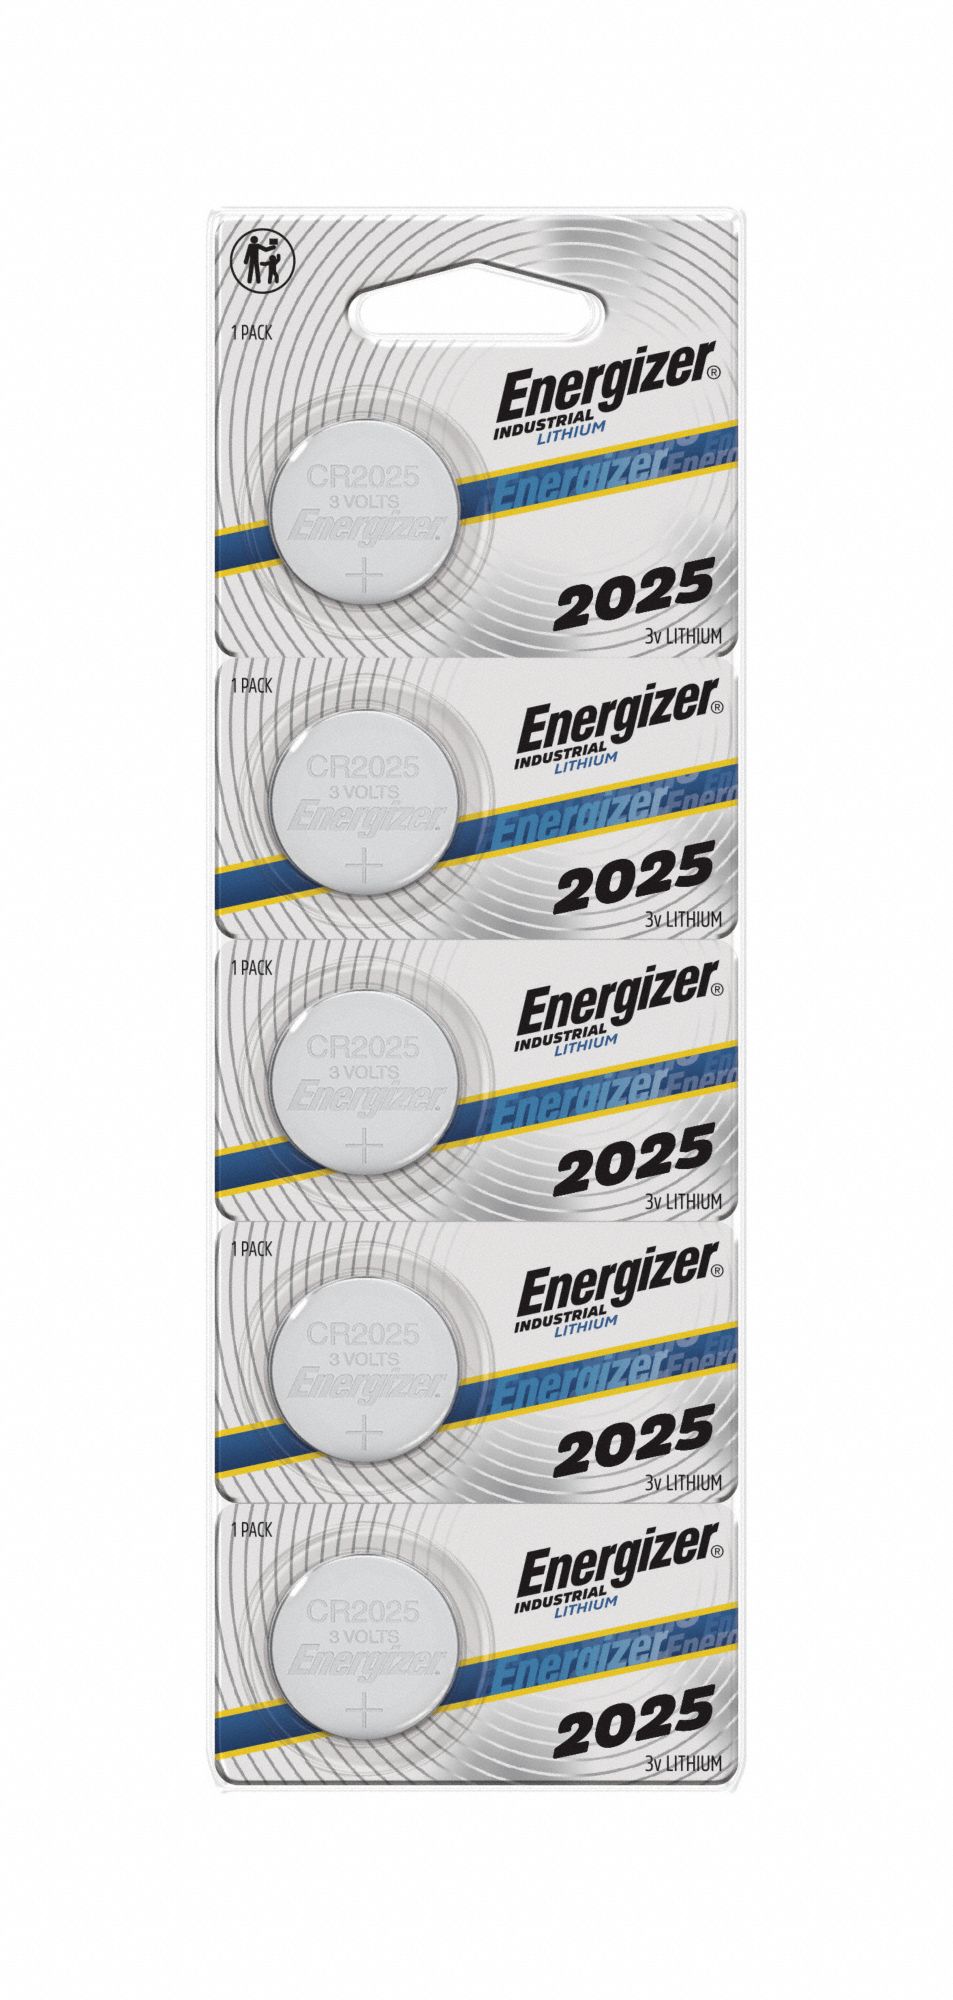 Energizer 3V CR2025 Battery